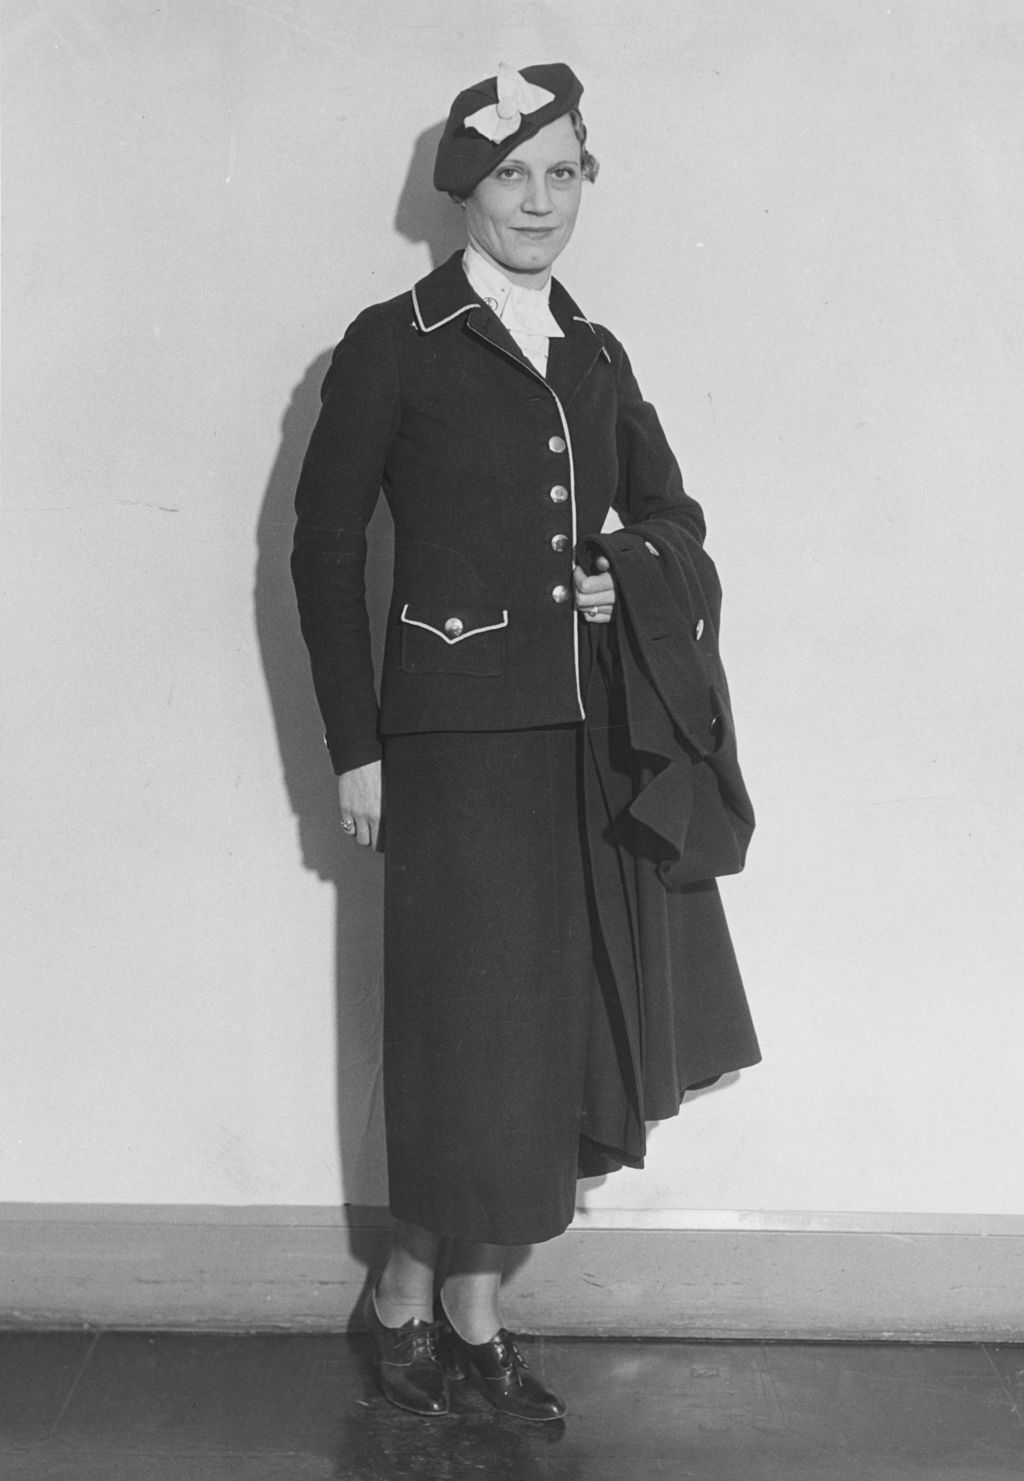 Woman models cashier uniform